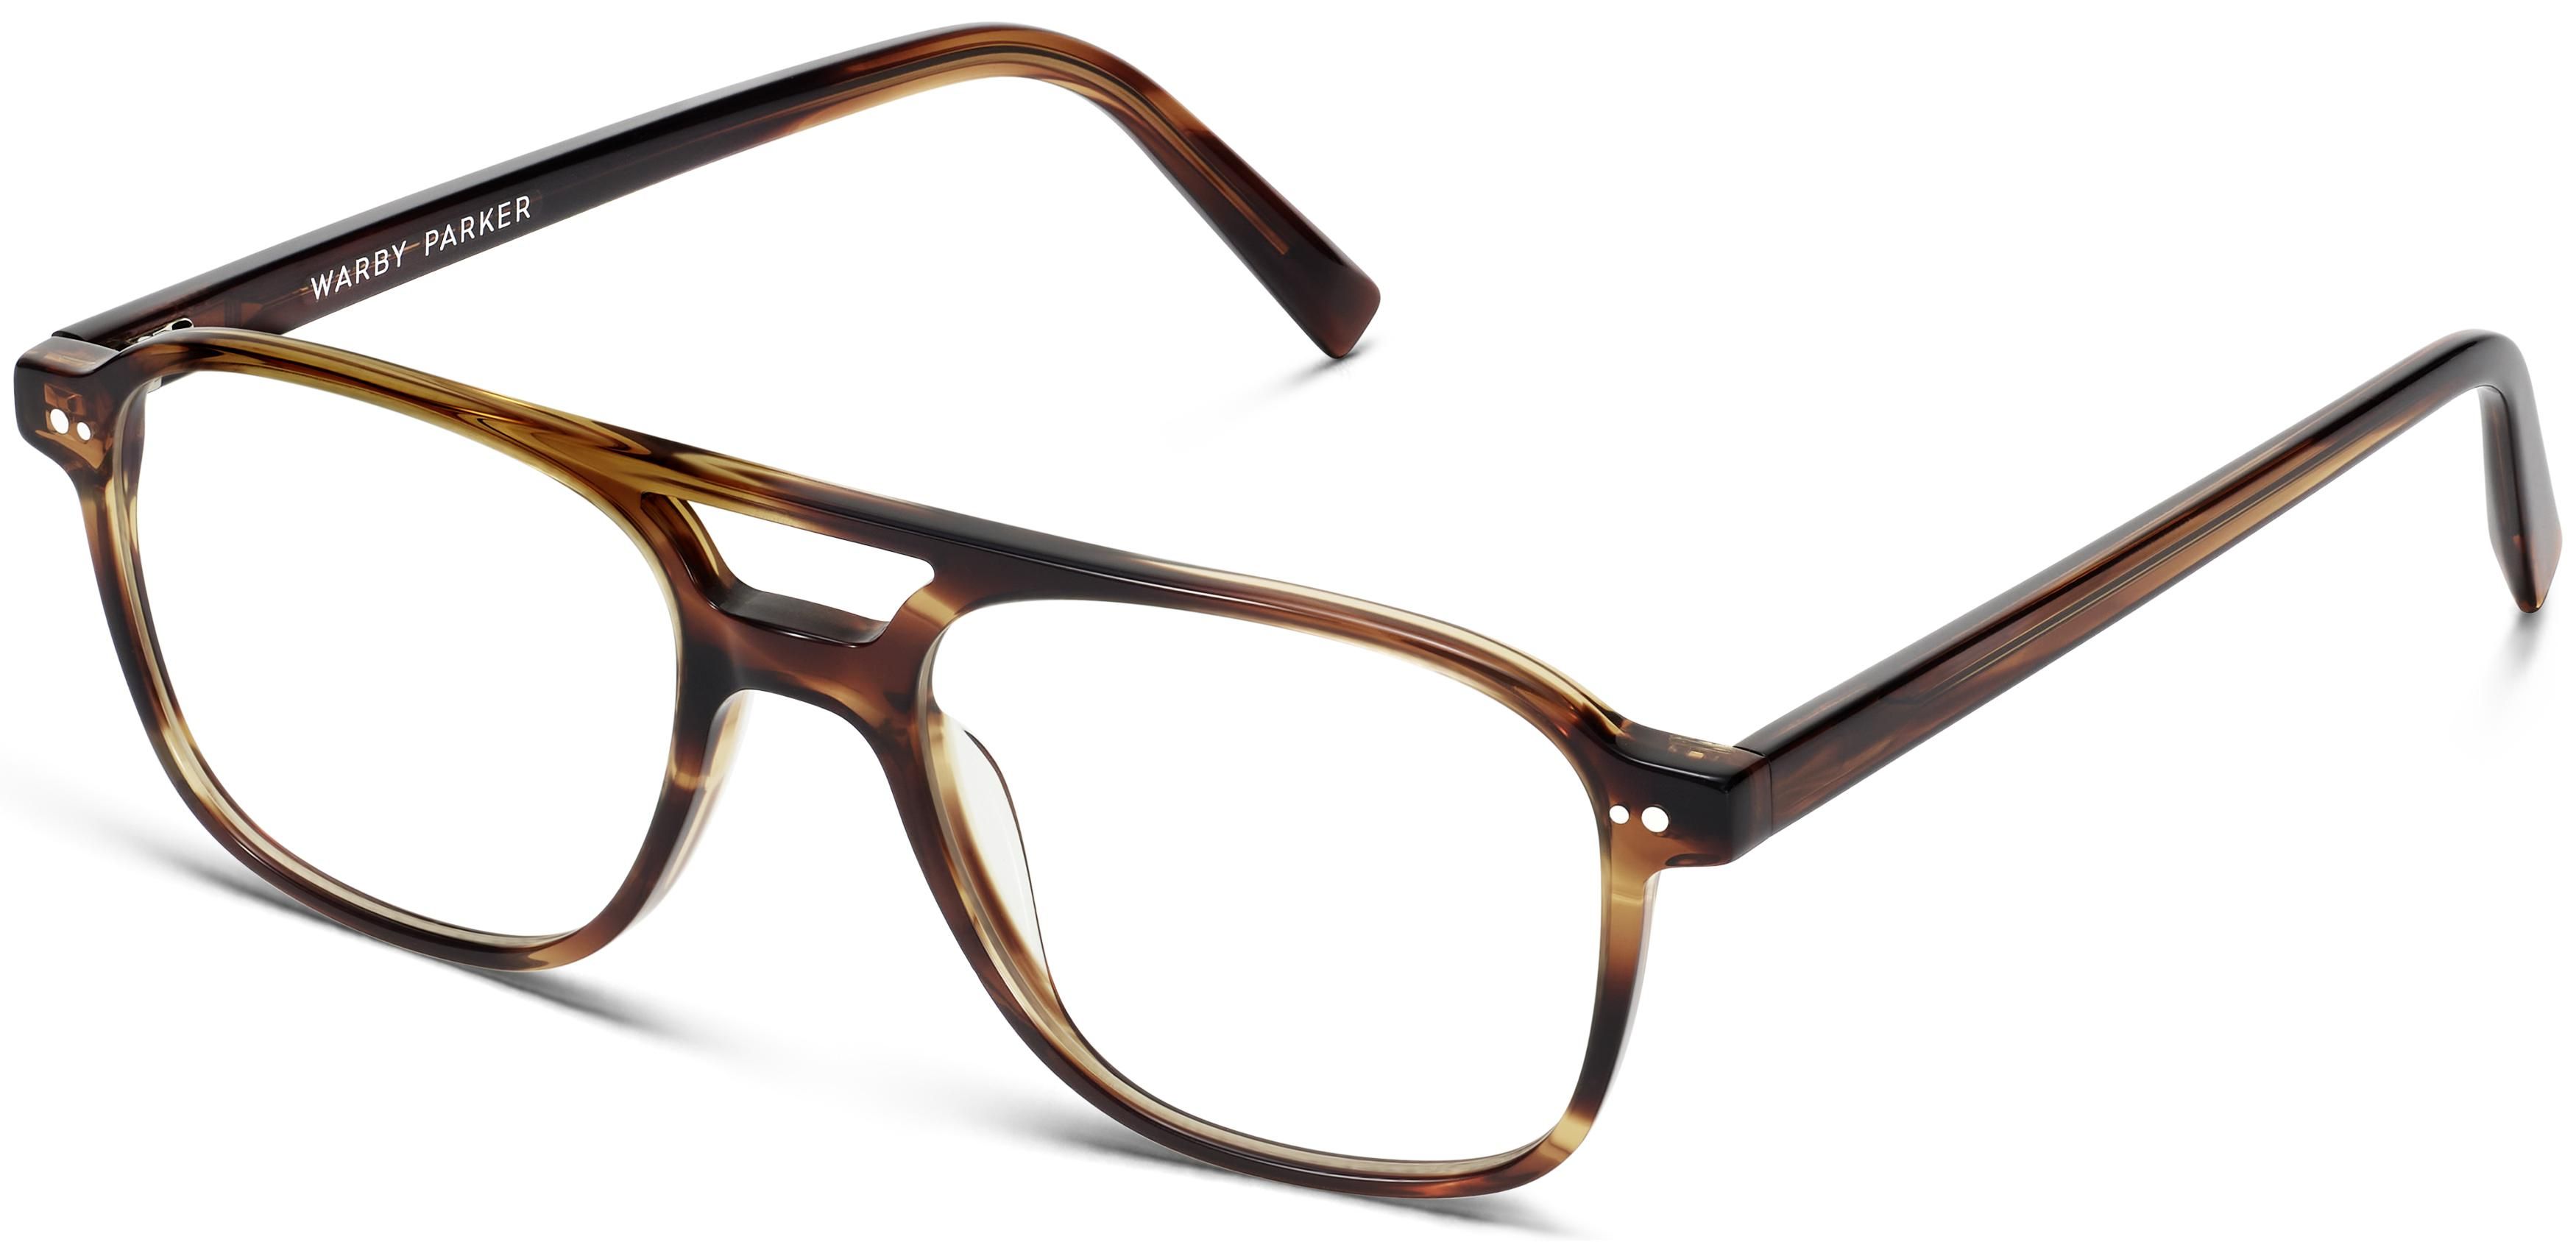 Brimmer Eyeglasses in Black Walnut | Warby Parker | Warby Parker (US)